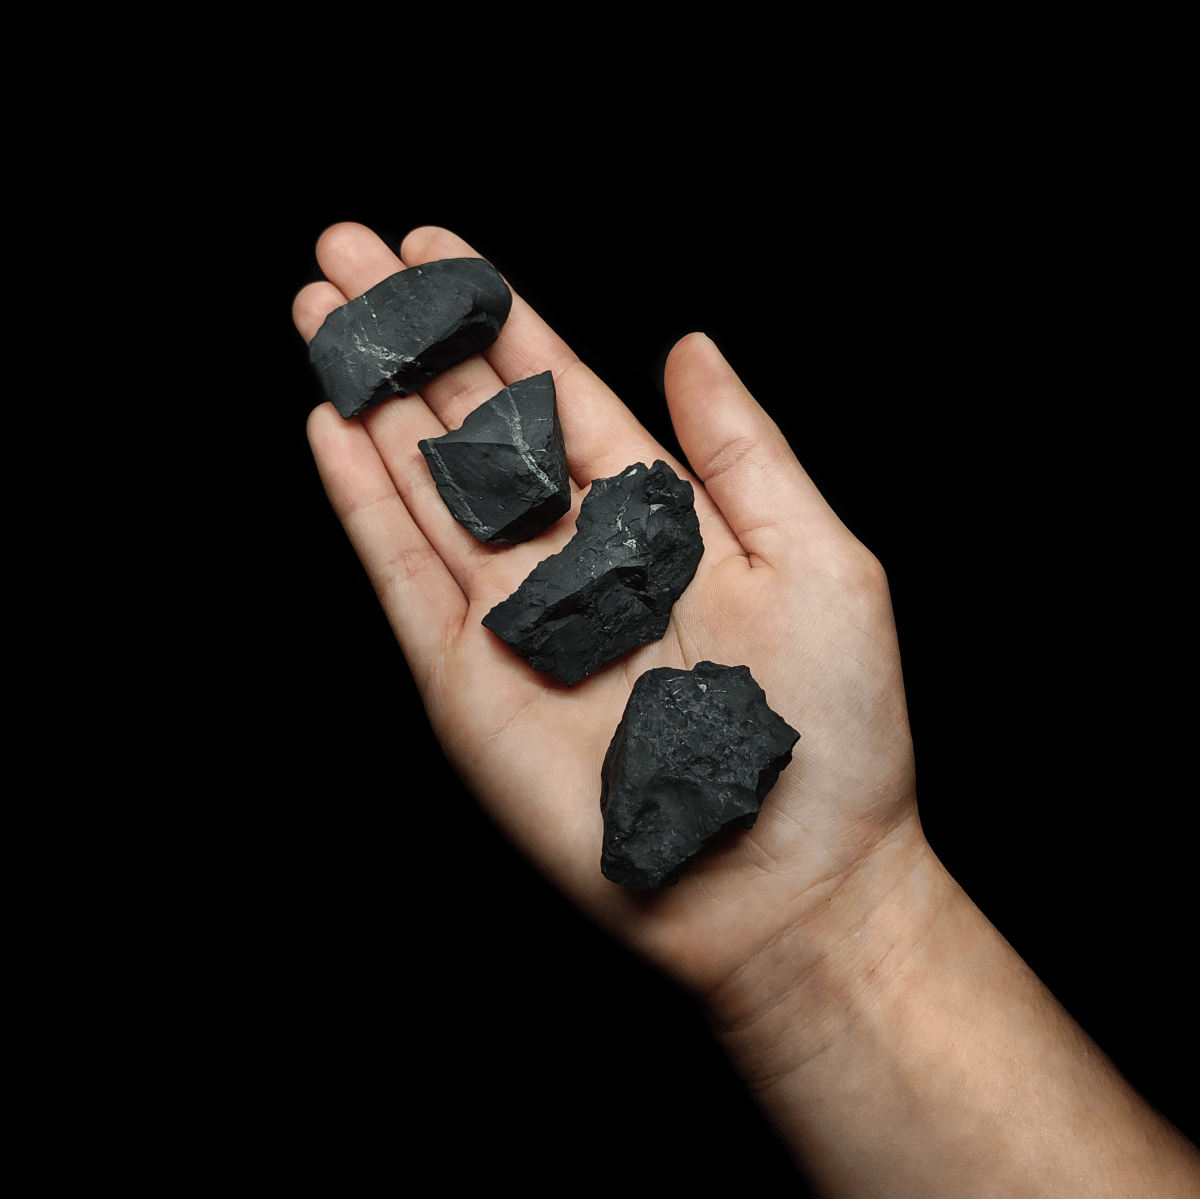 Produktpräsentation von natürlichen schwarzen Schungit Rohsteinen, welche zum Größenvergleich auf einer Frauenhand liegen.